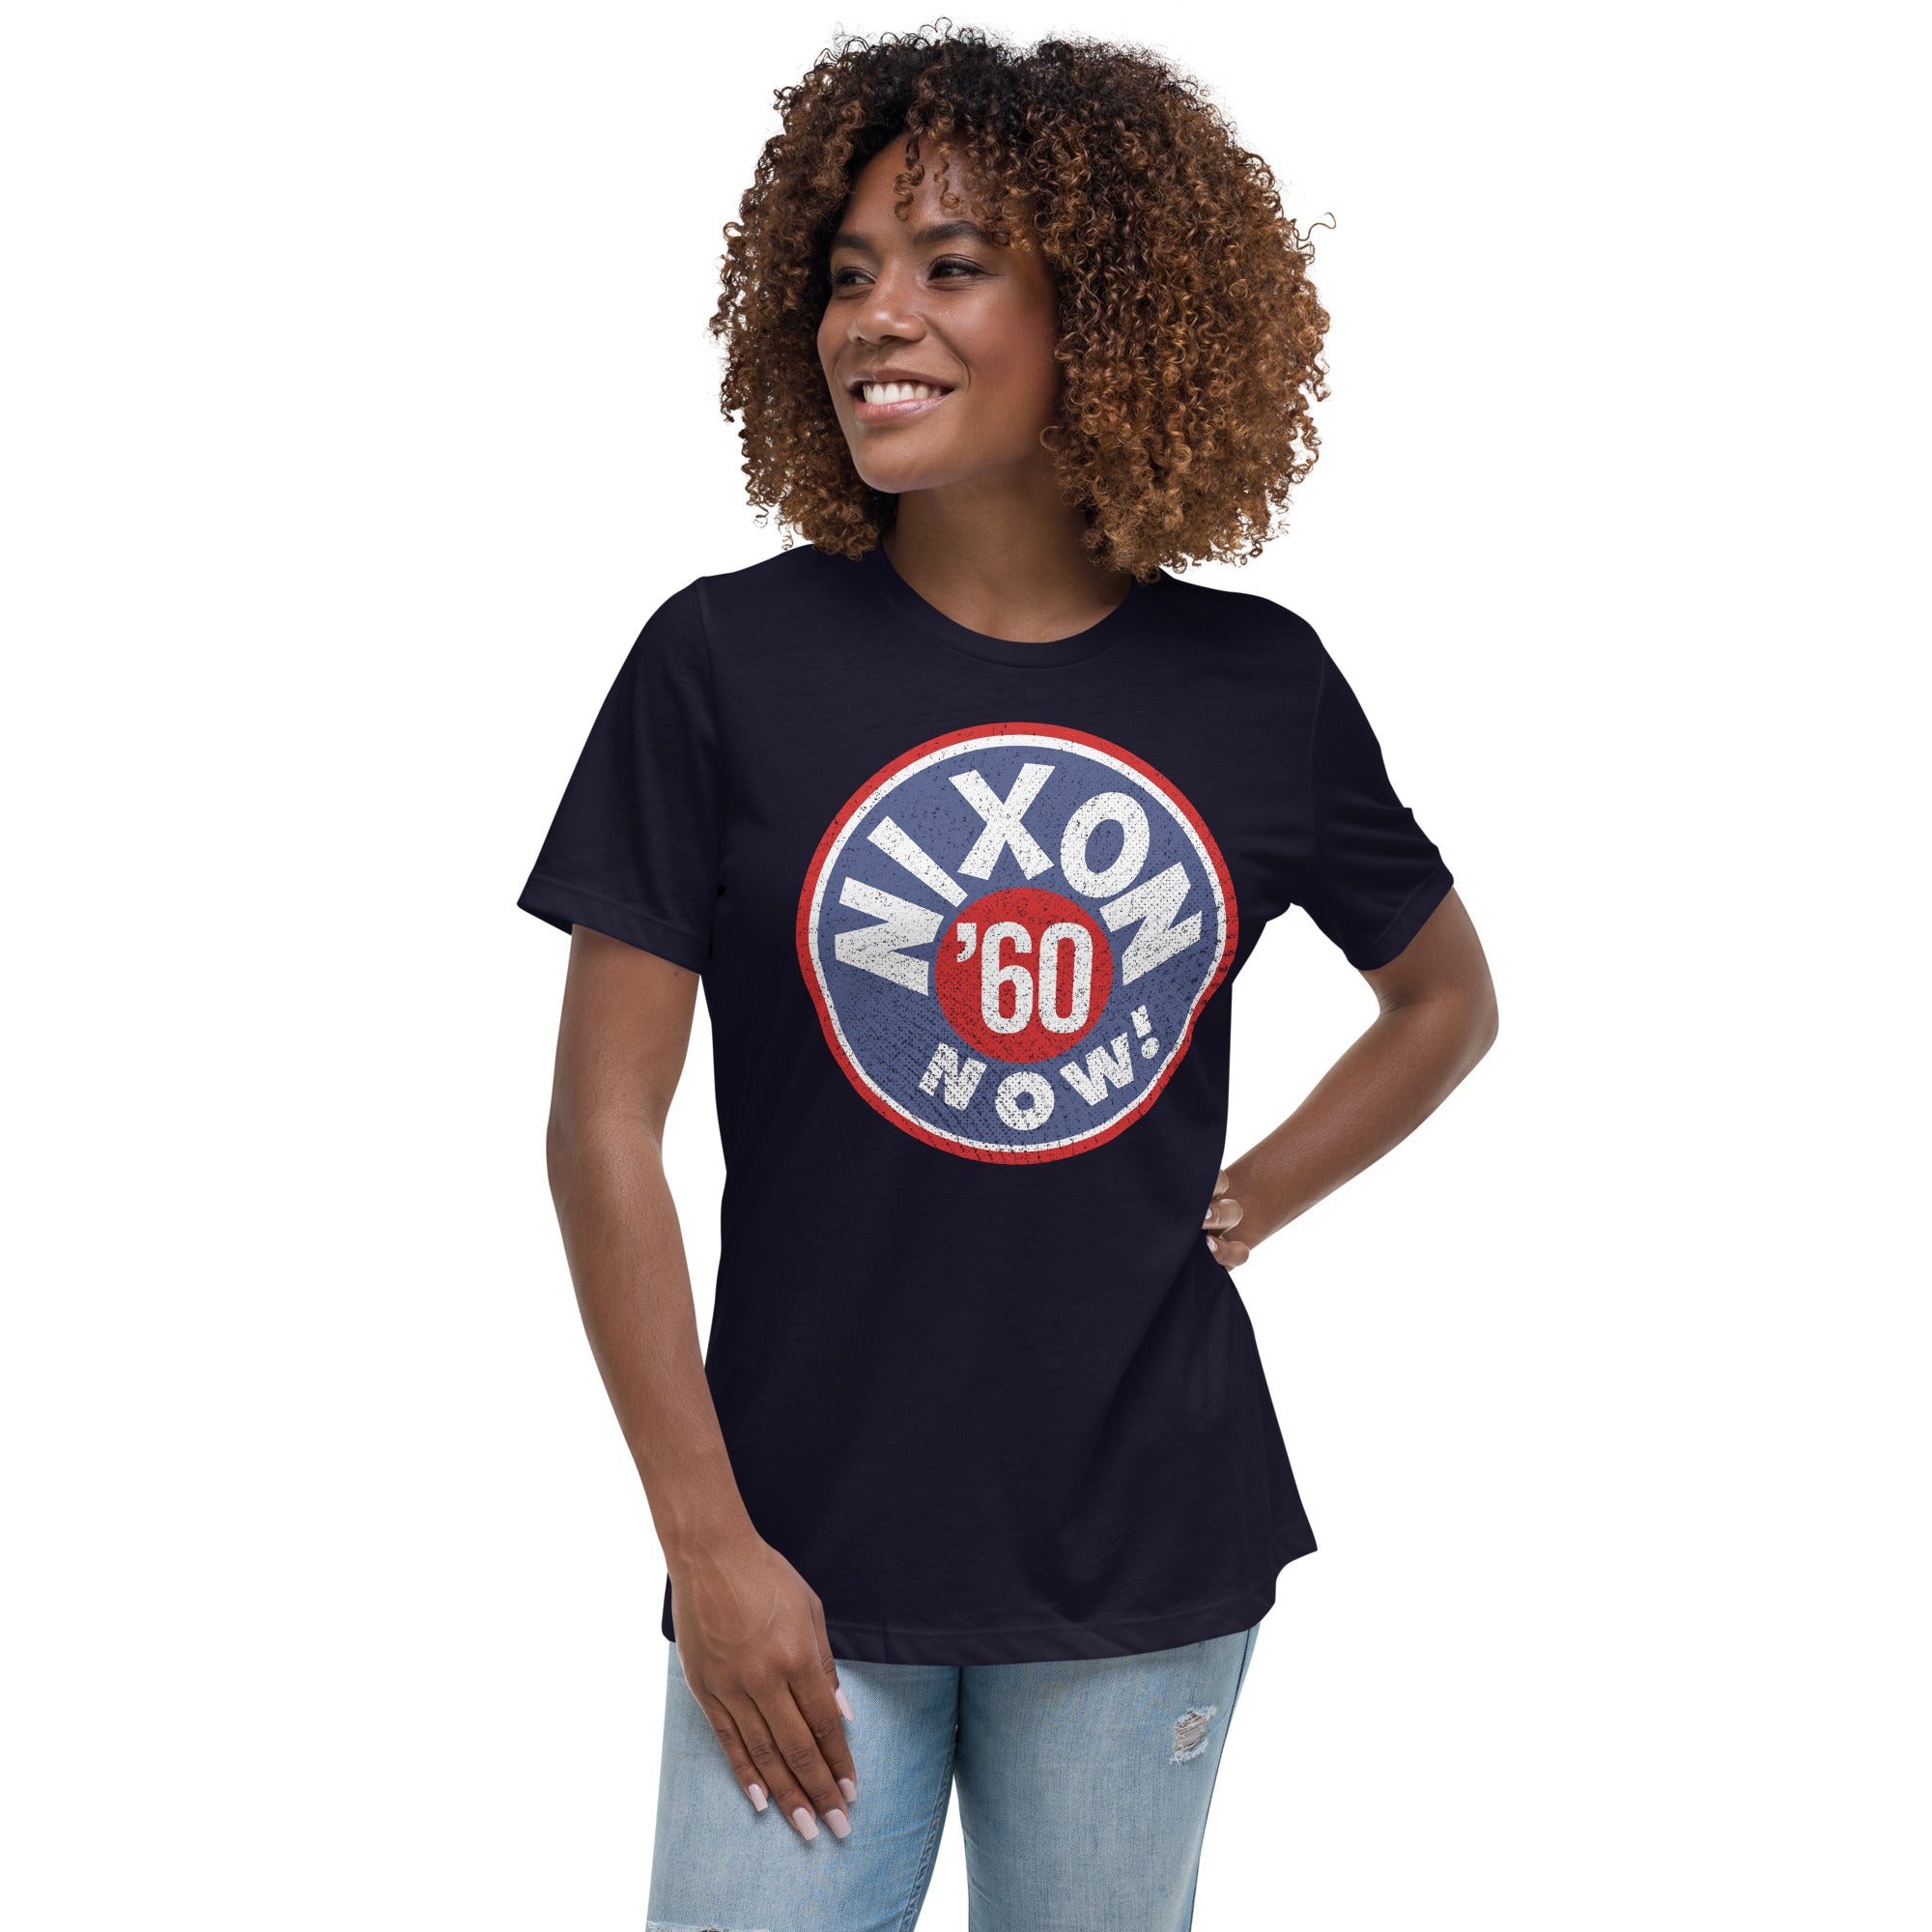 Nixon Now Women's Relaxed T-Shirt